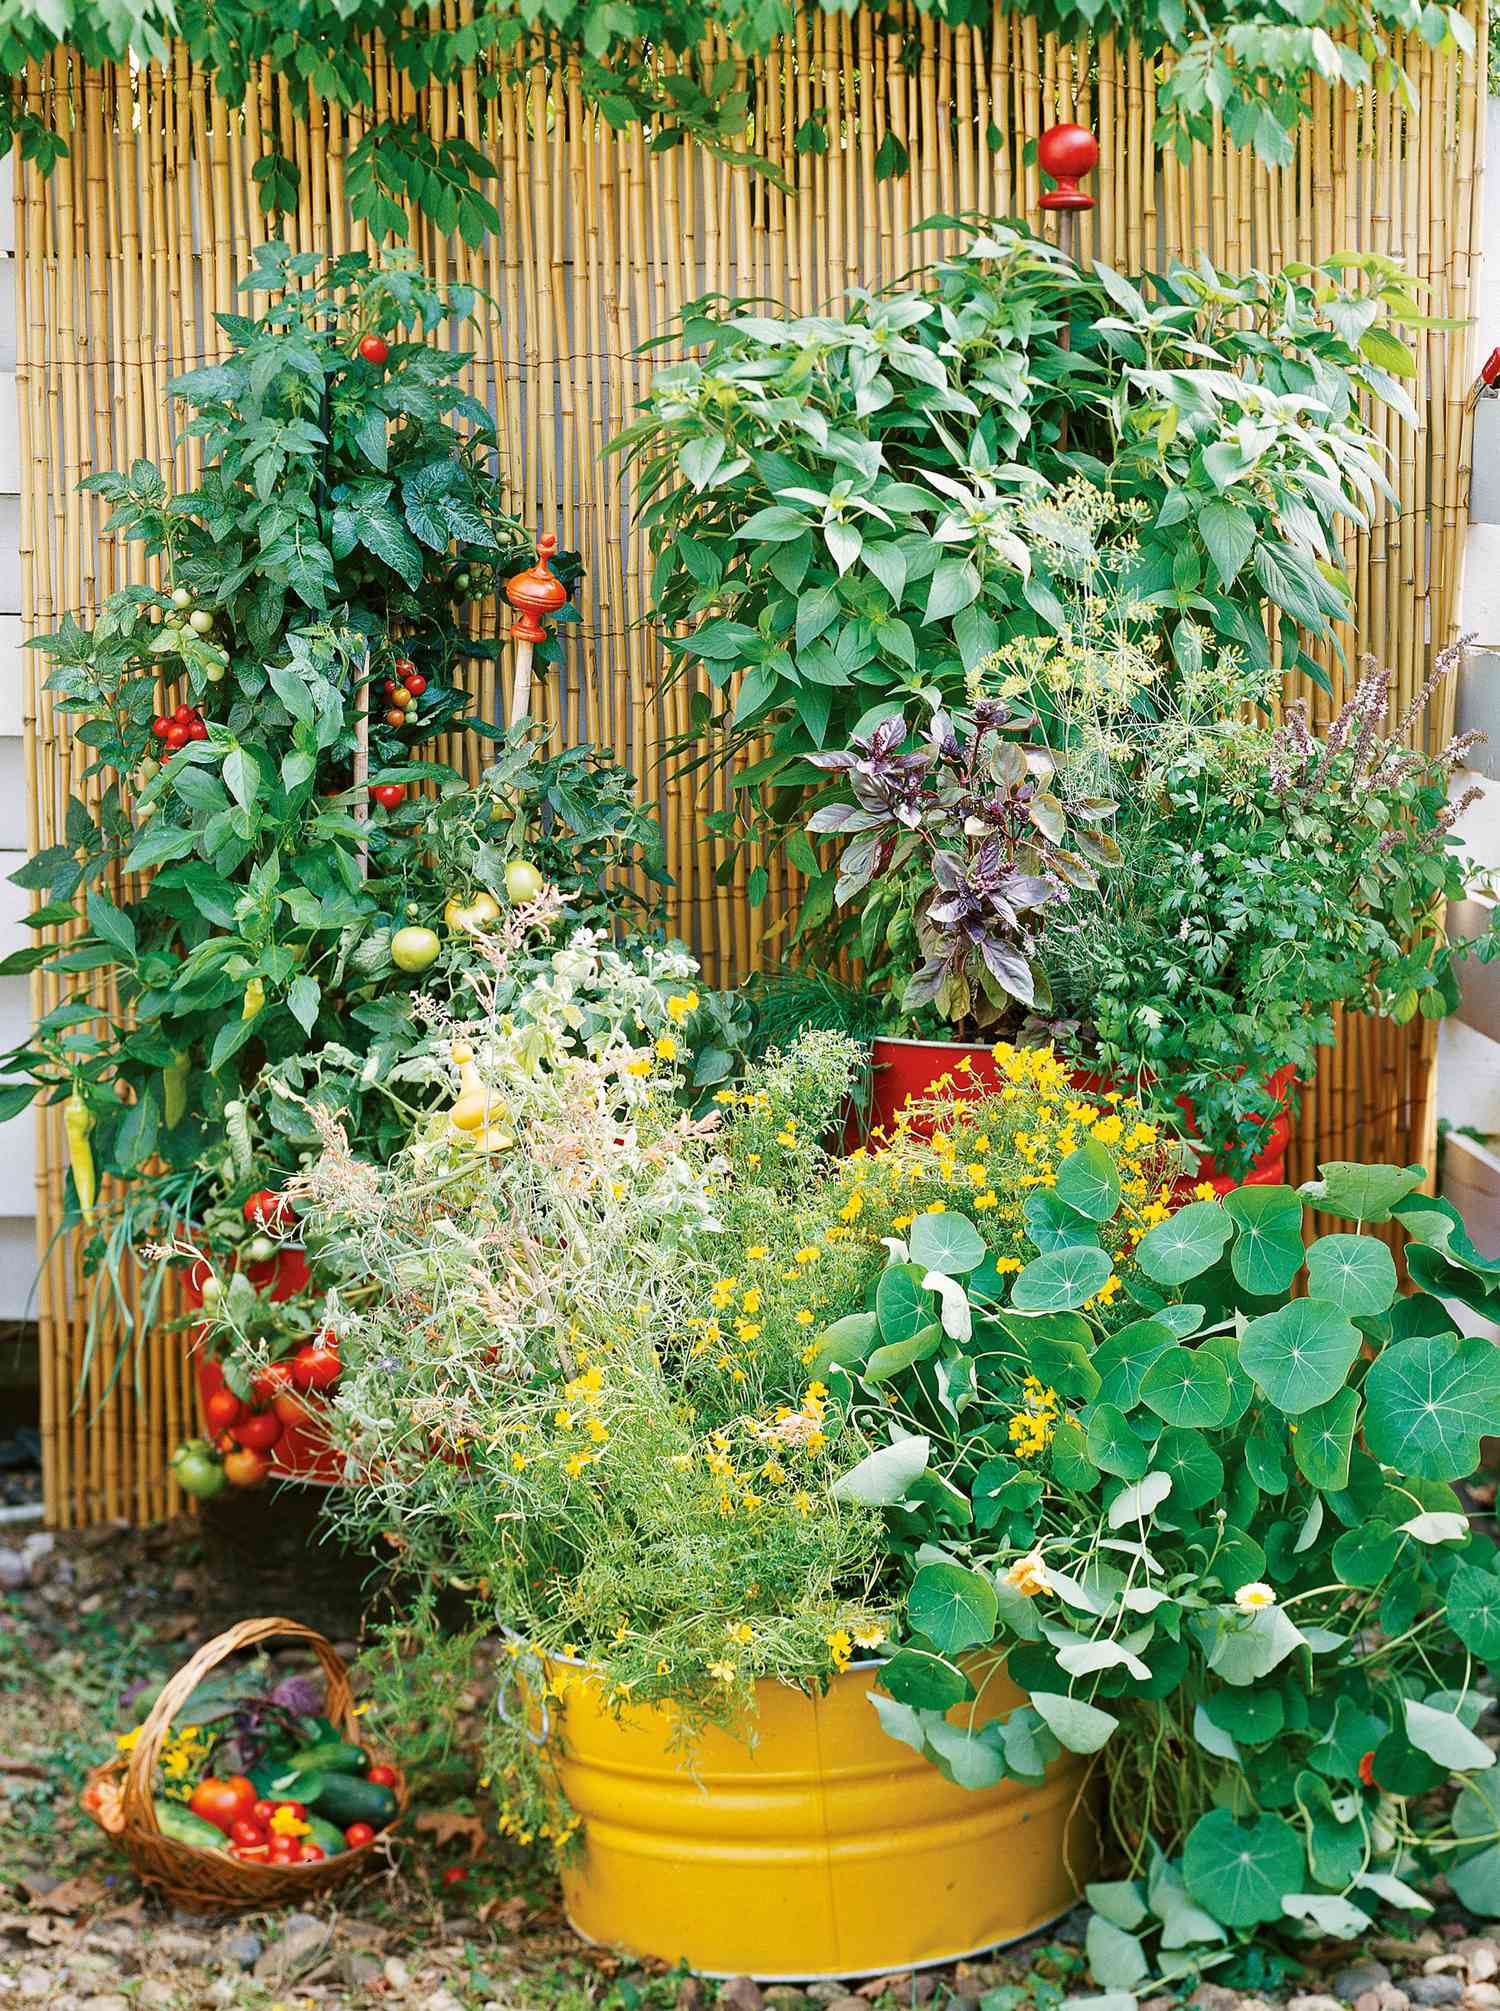 Plan a vegetable garden